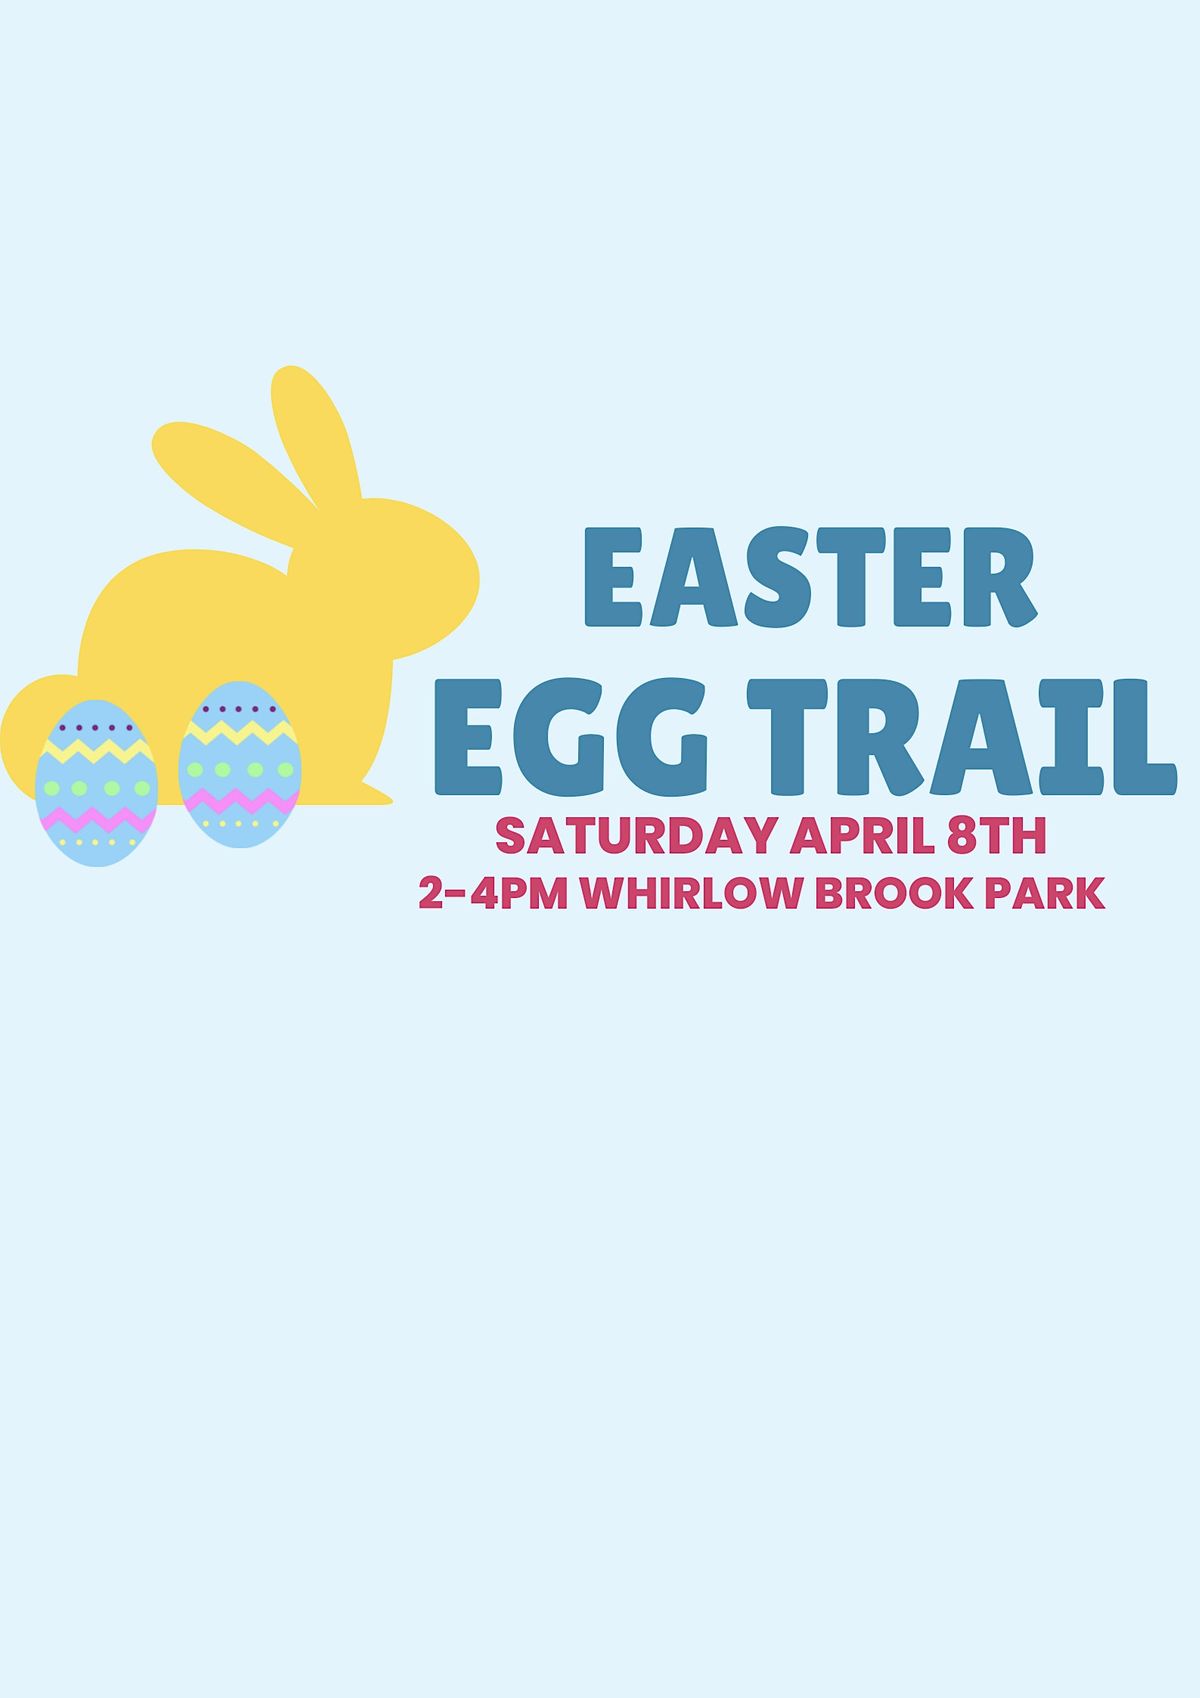 Easter egg trail